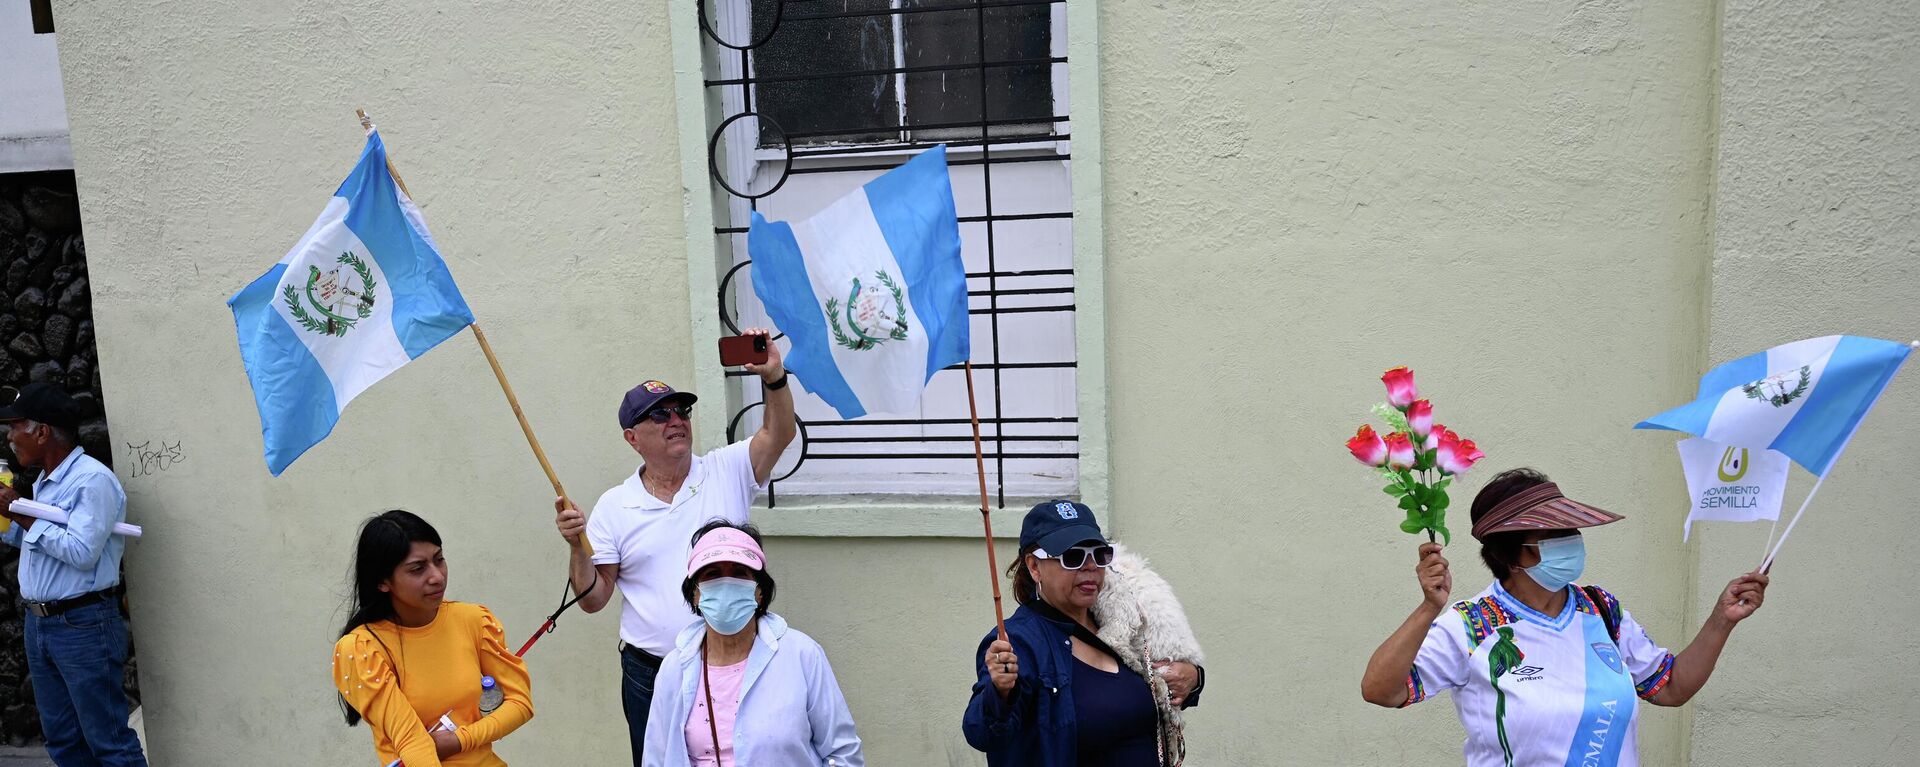 Ciudadanos de Guatemala protestan contra el poder judicial, al que acusan de crear una crisis electoral este 2023. - Sputnik Mundo, 1920, 19.08.2023